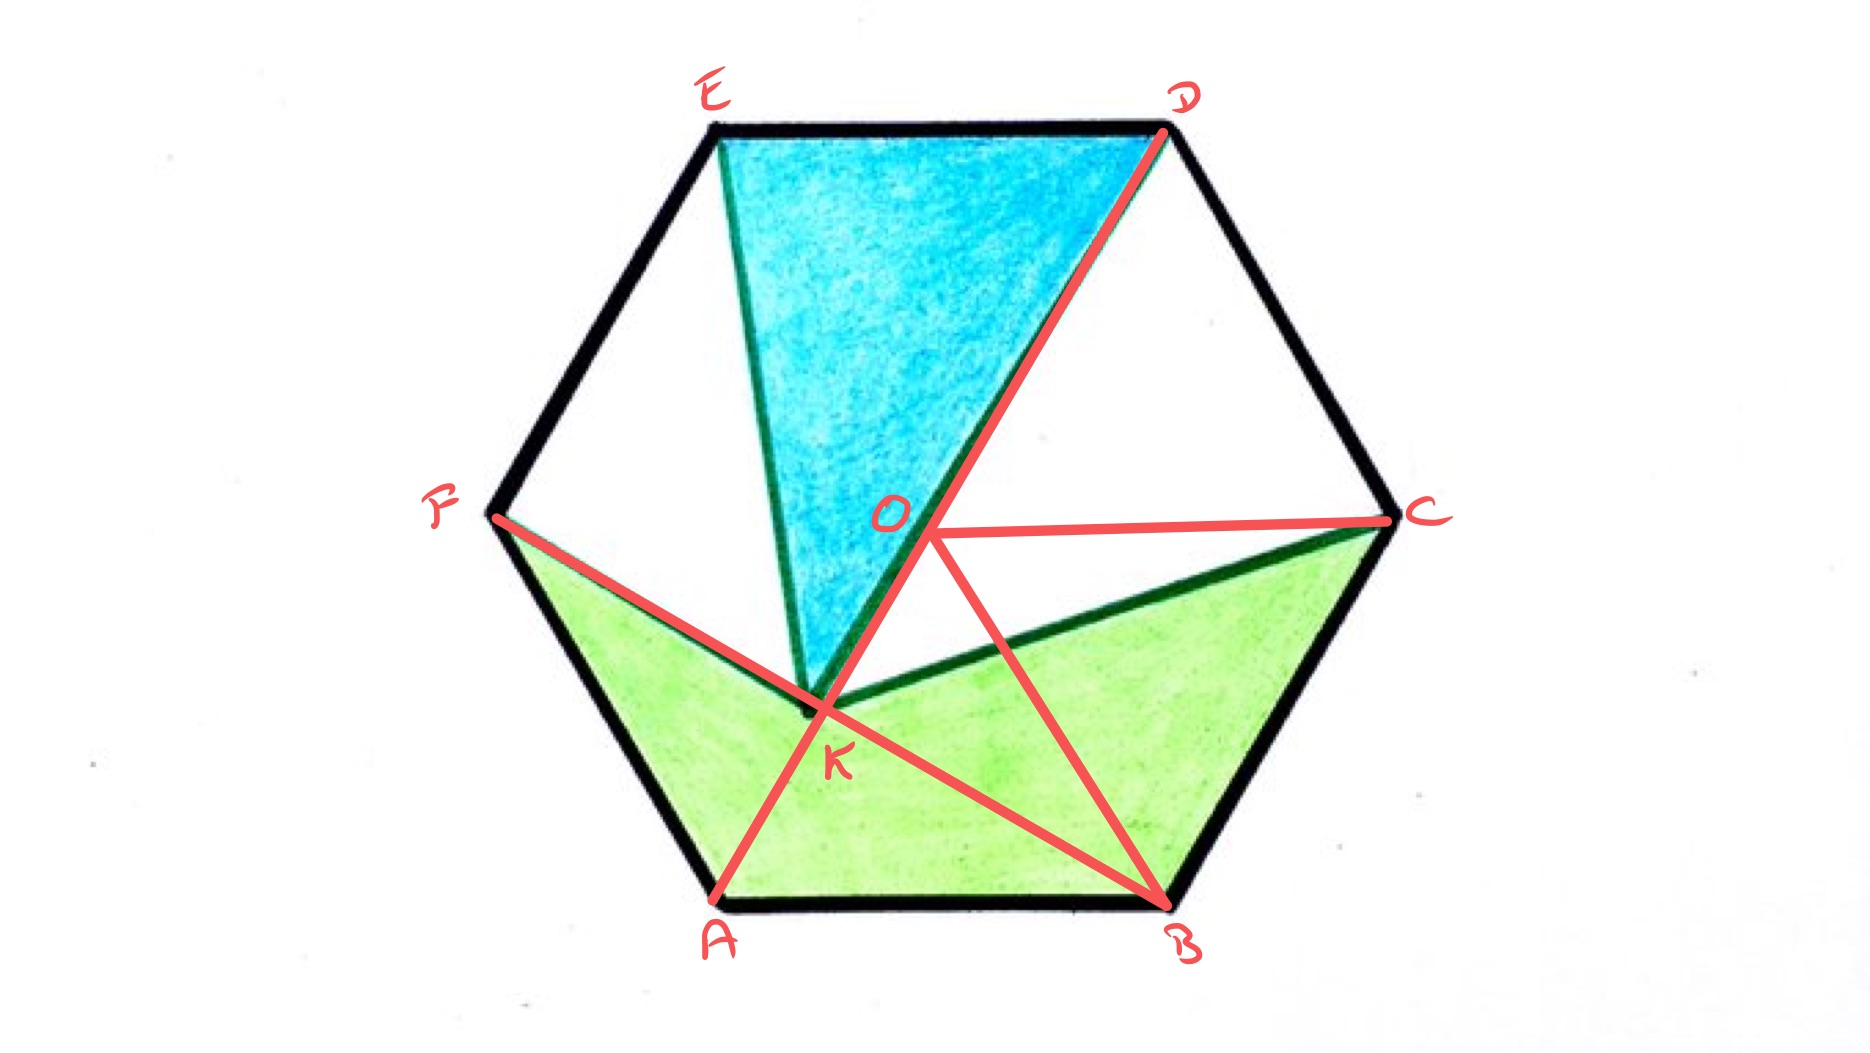 Quartered hexagon special